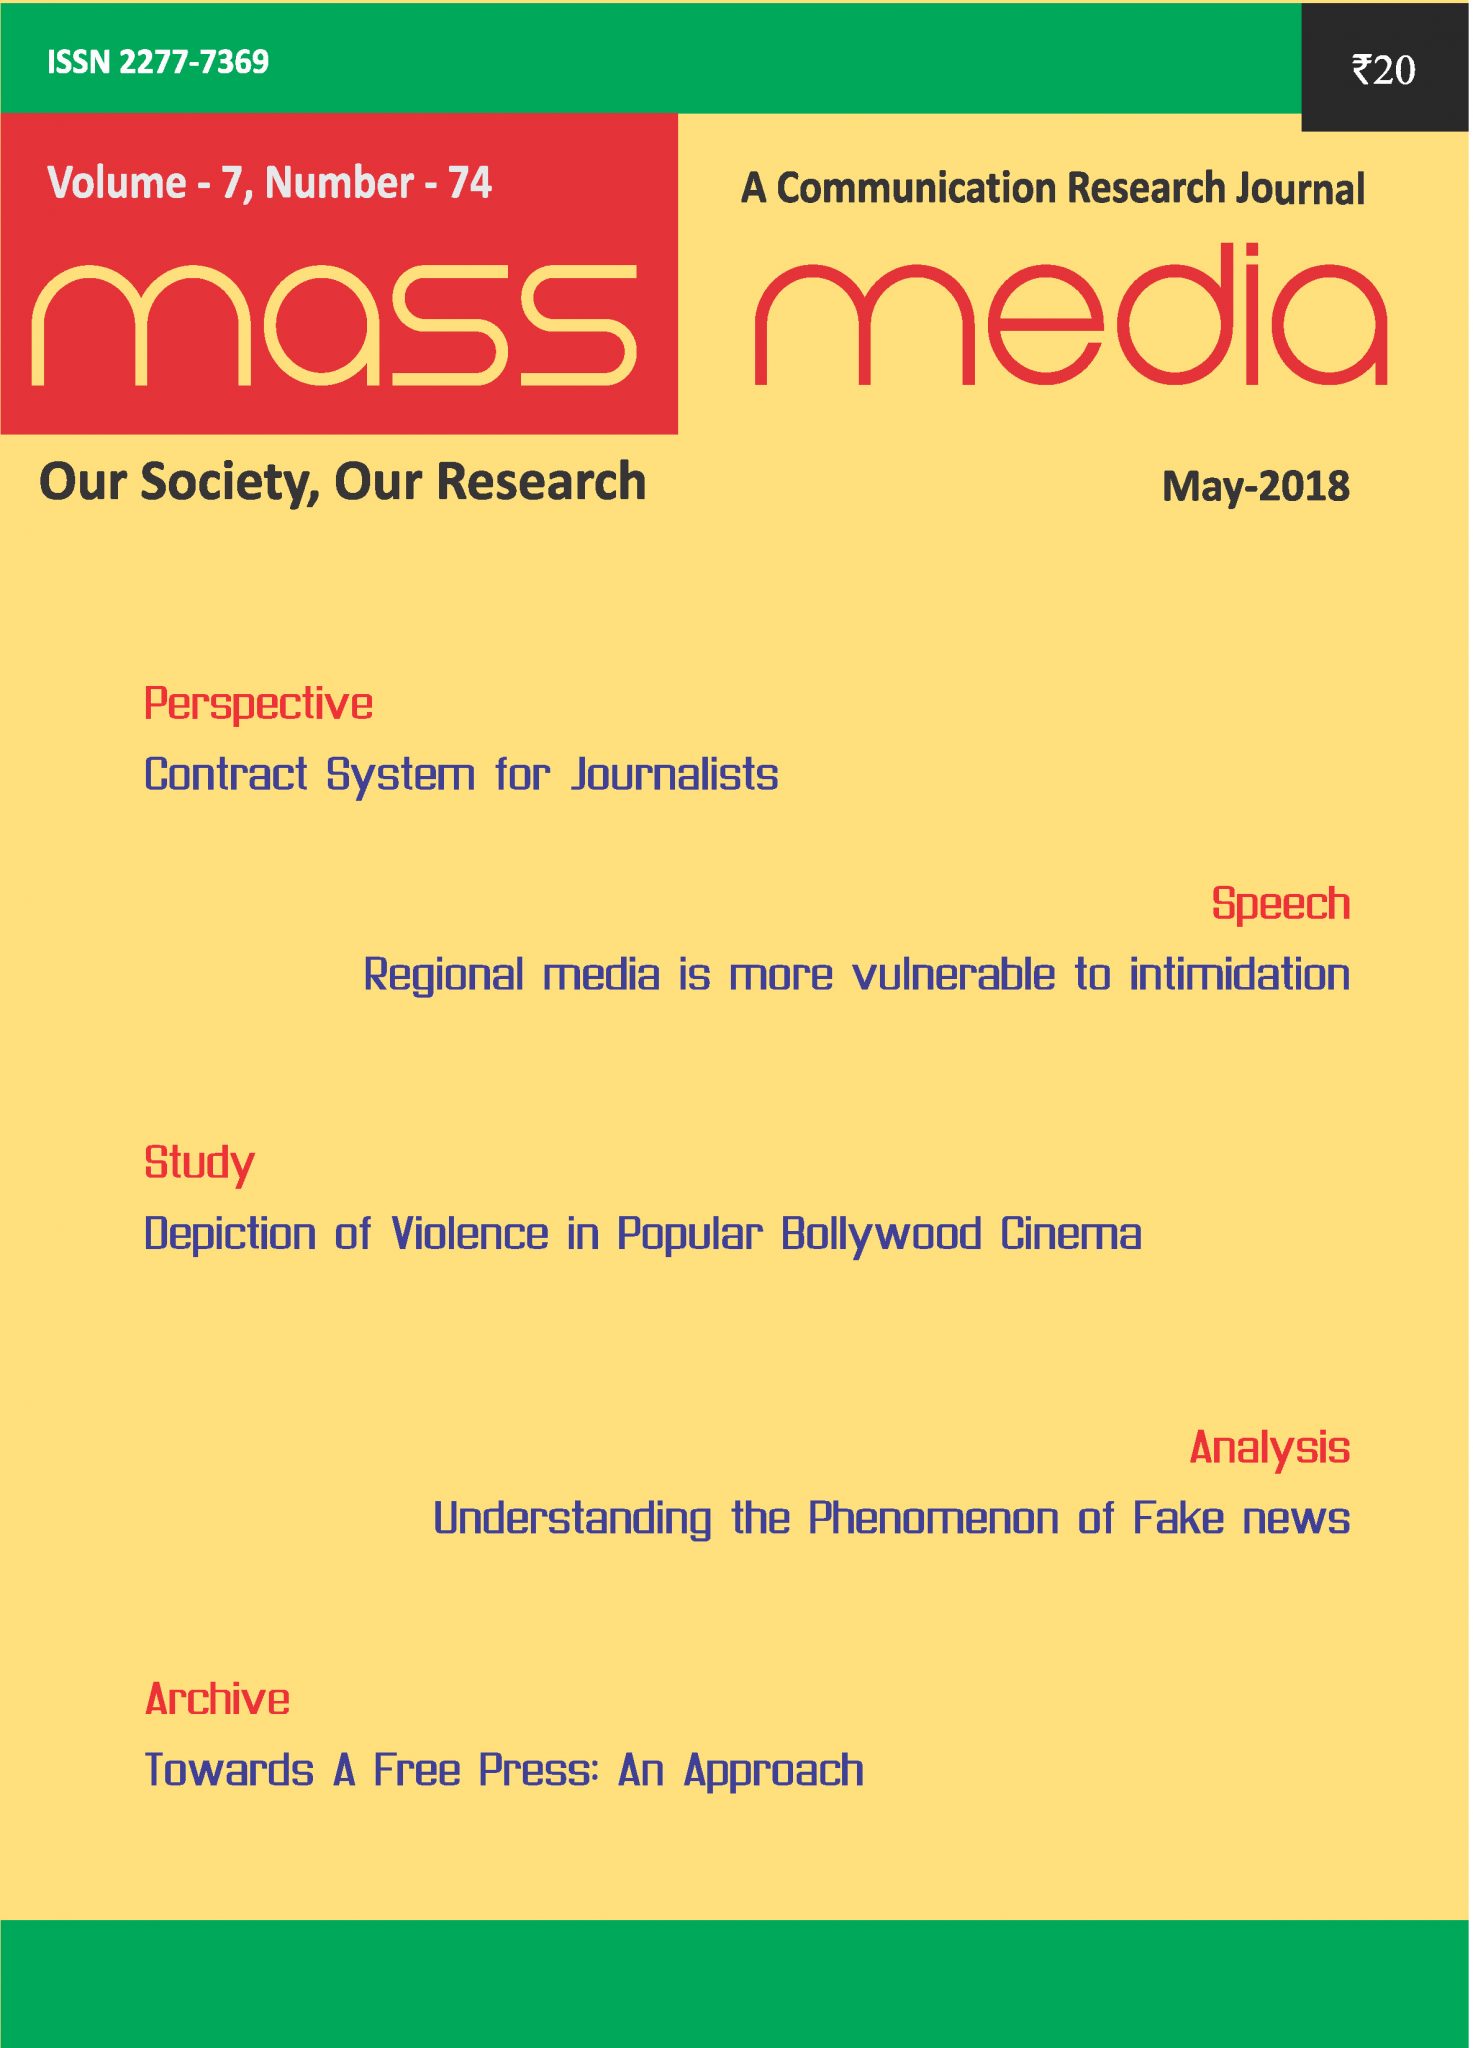 Mass Media (May 2018)